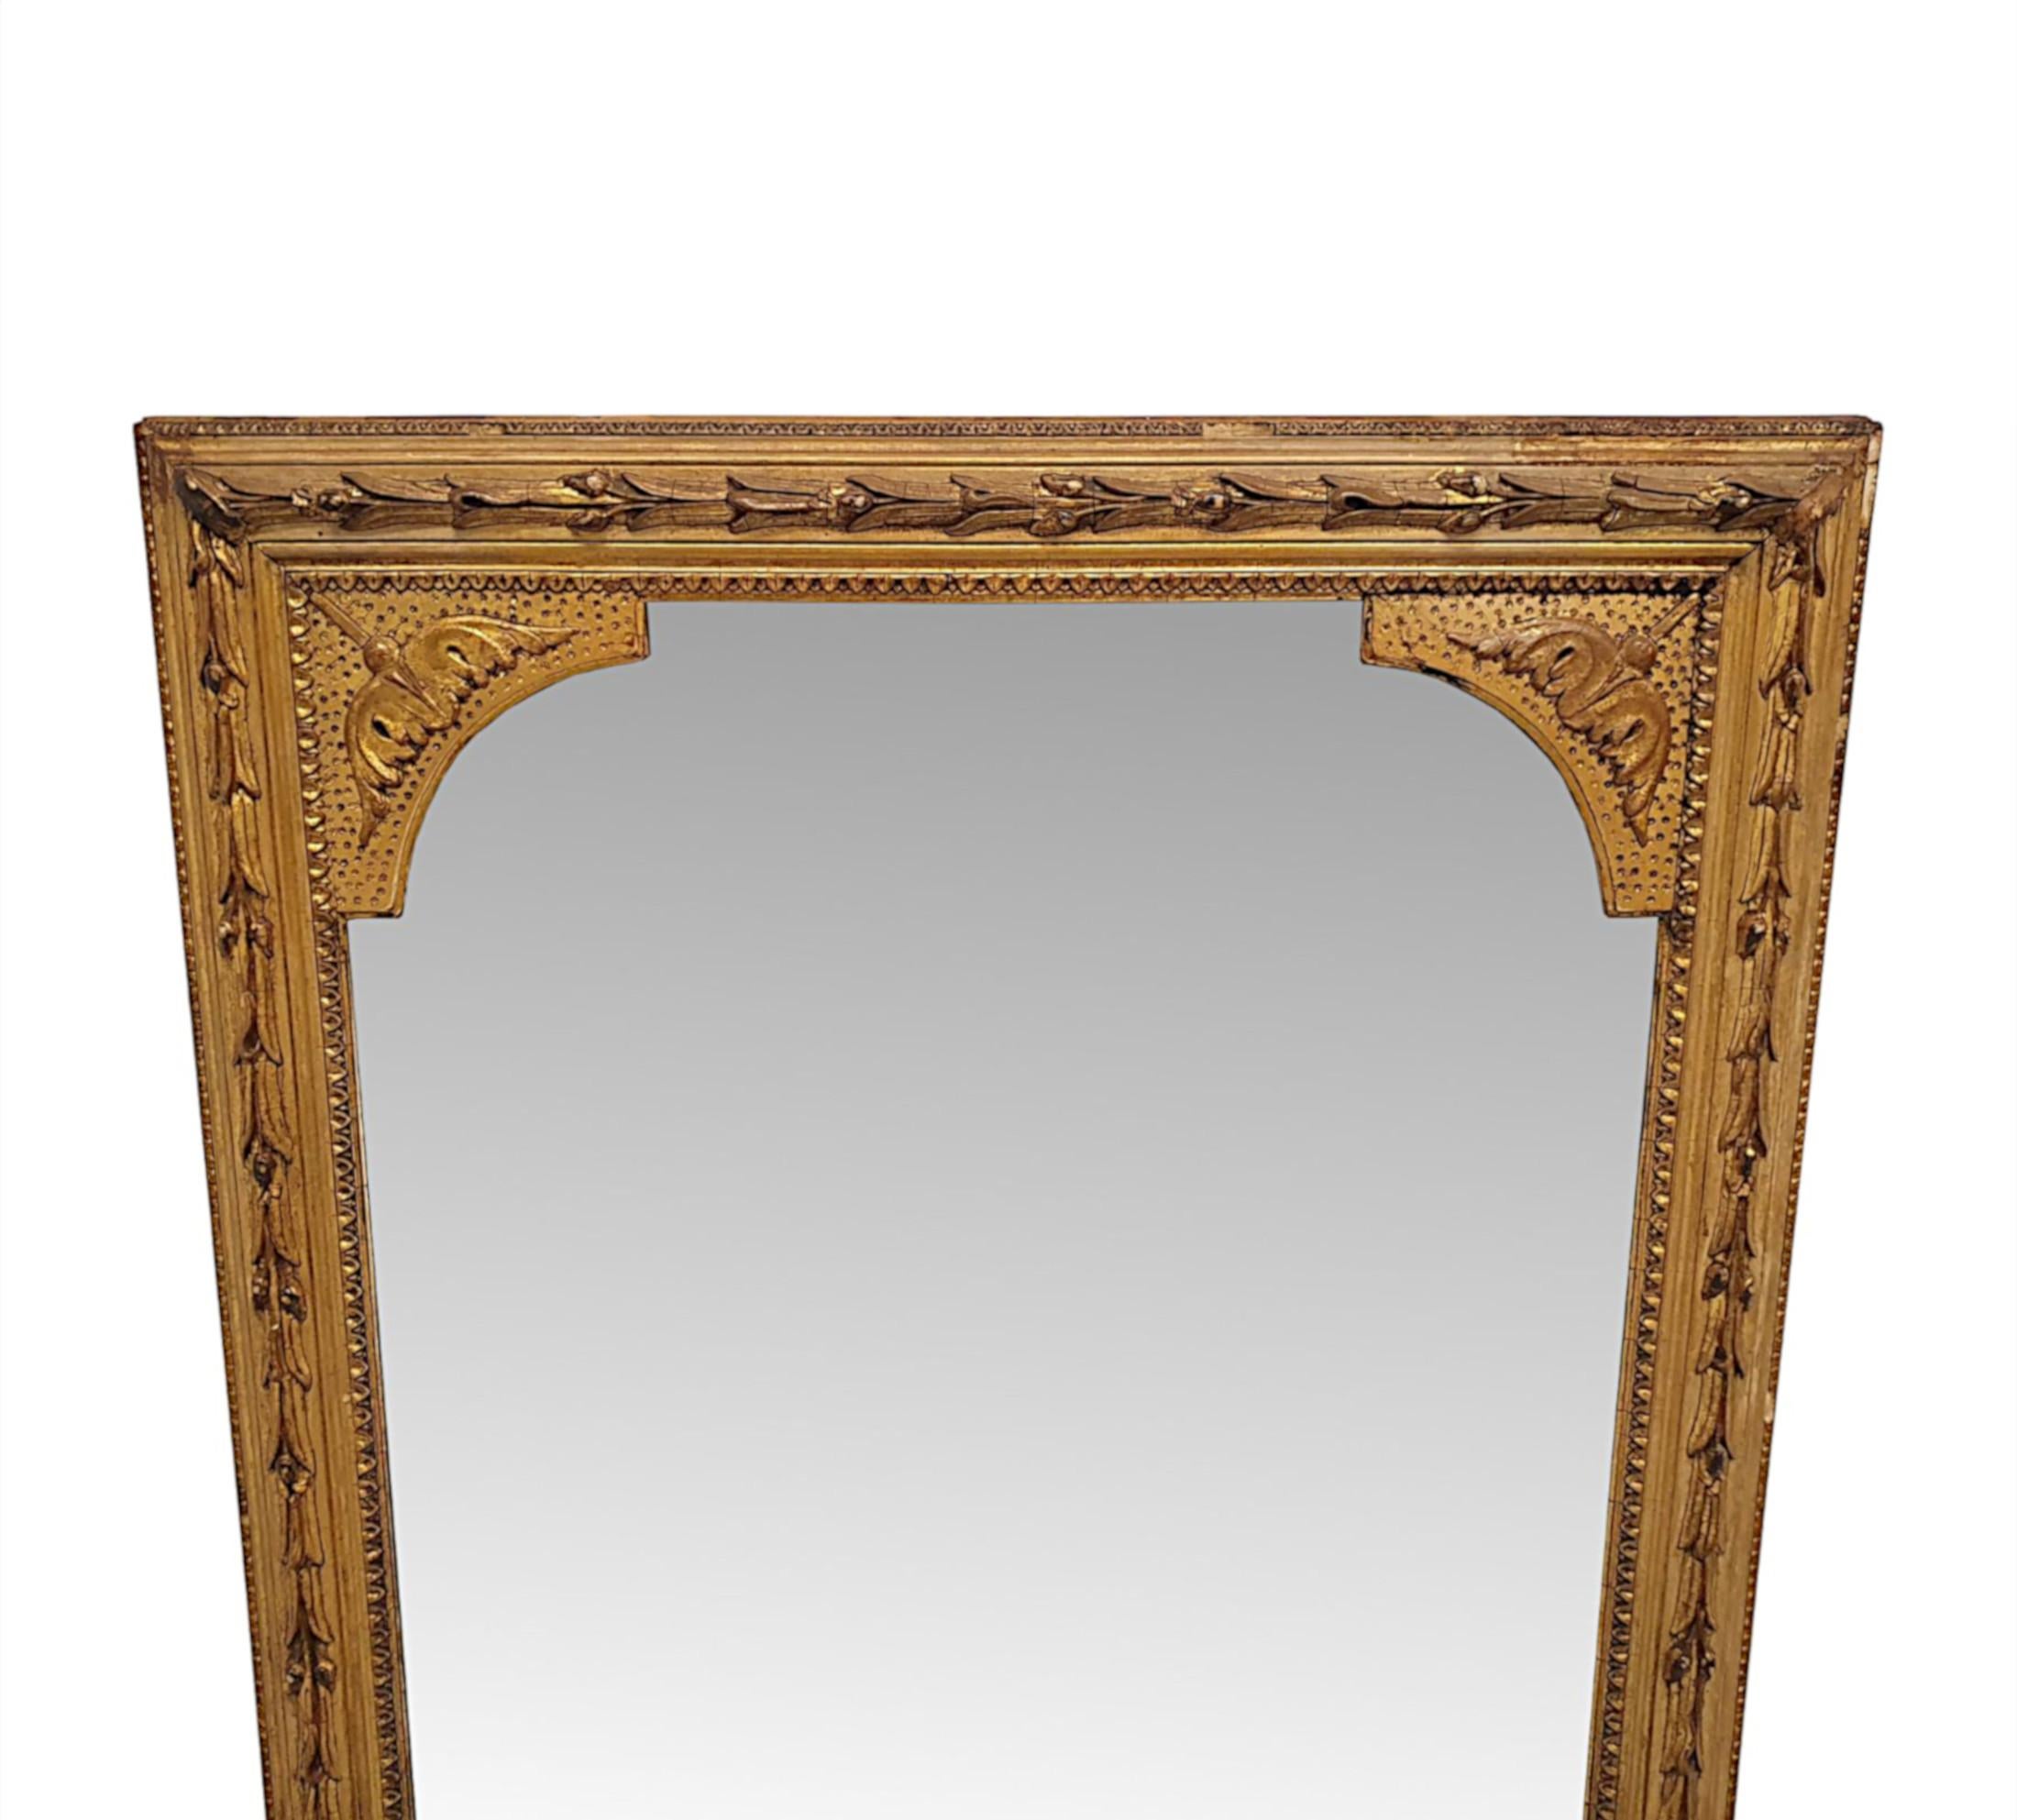 Eine fabelhafte 19. Jahrhundert vergoldet Pier oder Dressing Spiegel von hohen und schmalen Proportionen und in schönen ursprünglichen unberührten Zustand.  Die wunderschöne funkelnde Quecksilber-Spiegelglasplatte in rechteckiger Form ist in einen